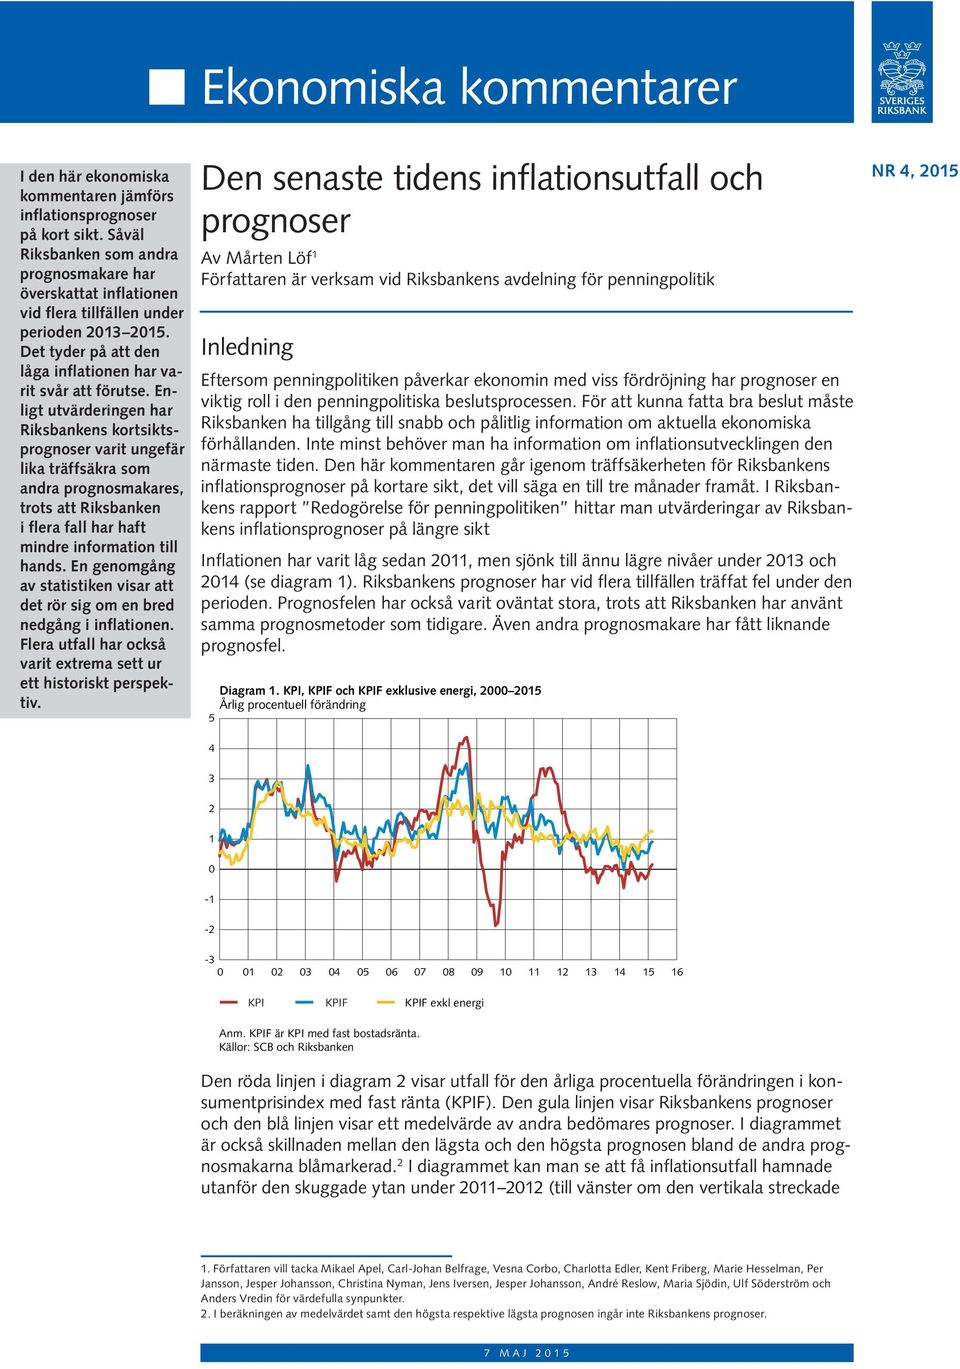 Enligt utvärderingen har Riksbankens kortsiktsprognoser varit ungefär lika träffsäkra som andra prognosmakares, trots att Riksbanken i flera fall har haft mindre information till hands.